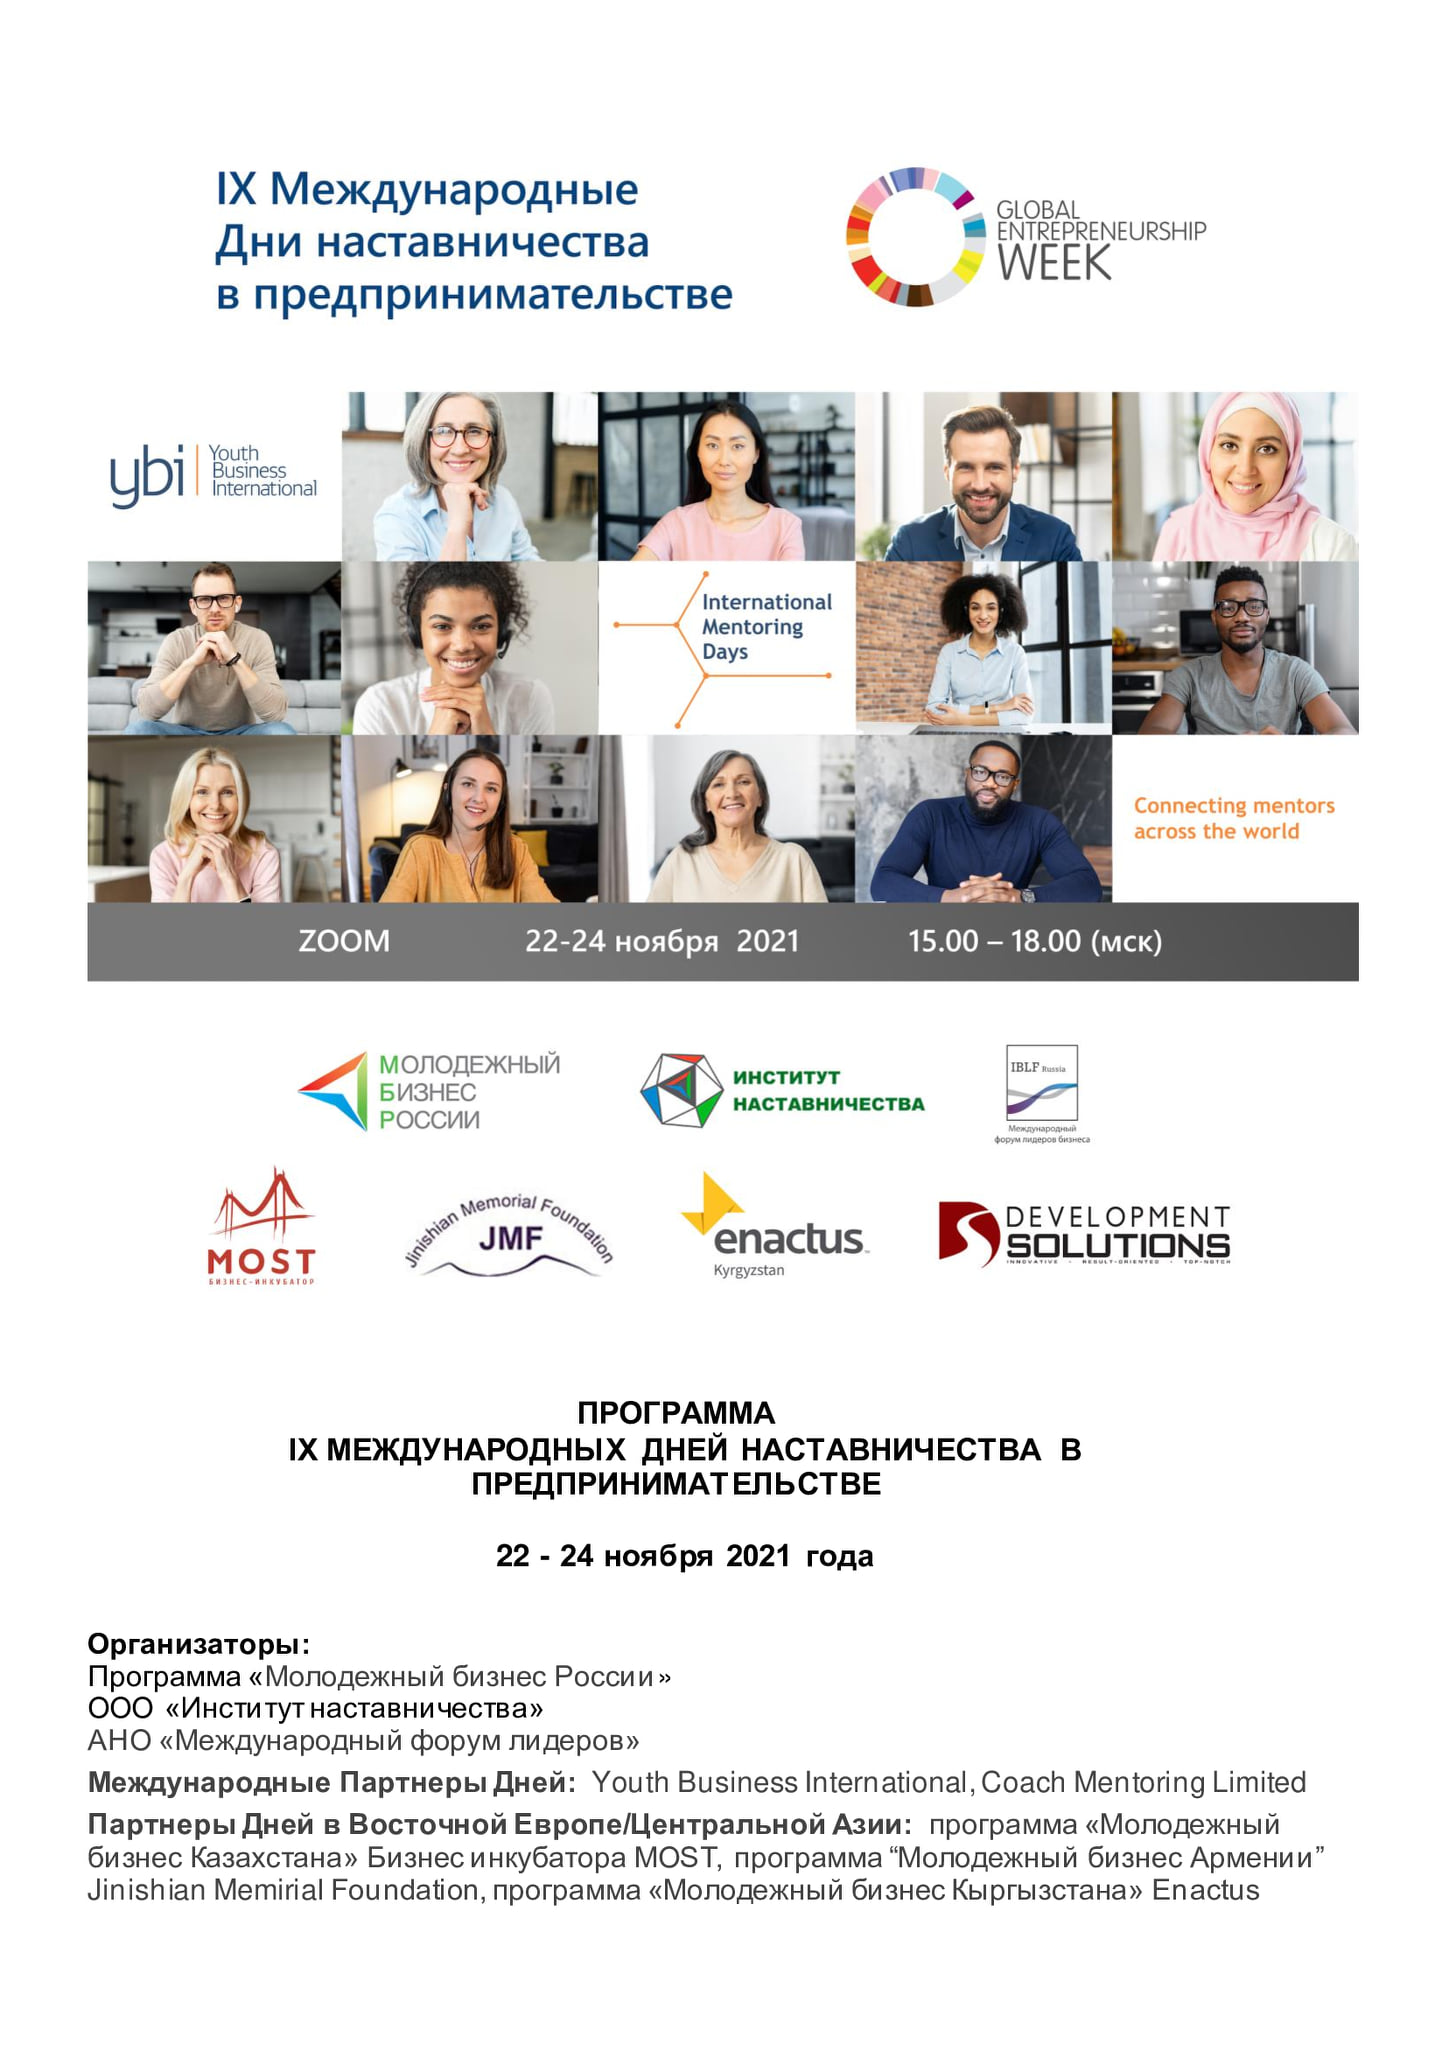 В период с 22 по 24 ноября 2021 года, 15:00-18:00 (мск) состоятся IX Международные Дни наставничества в предпринимательстве в формате Zoom-конференции.